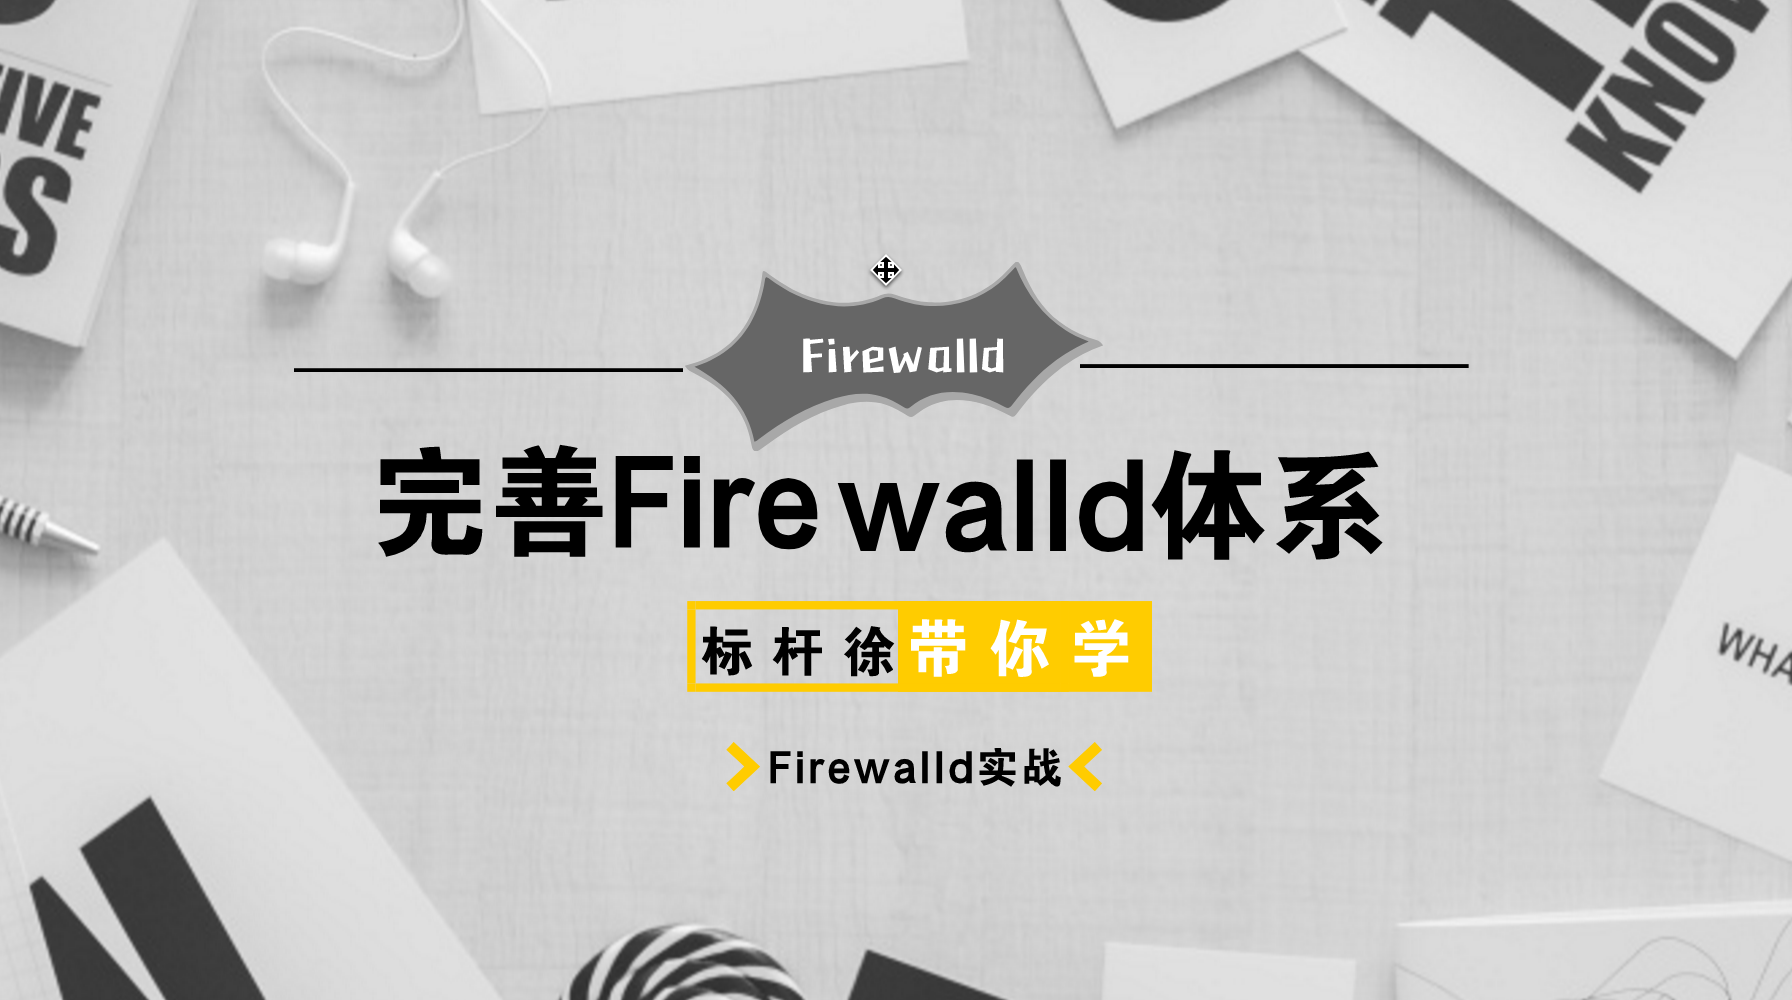  标杆徐2018 Linux自动化运维系列⑤: Firewalld防火墙应用与实践